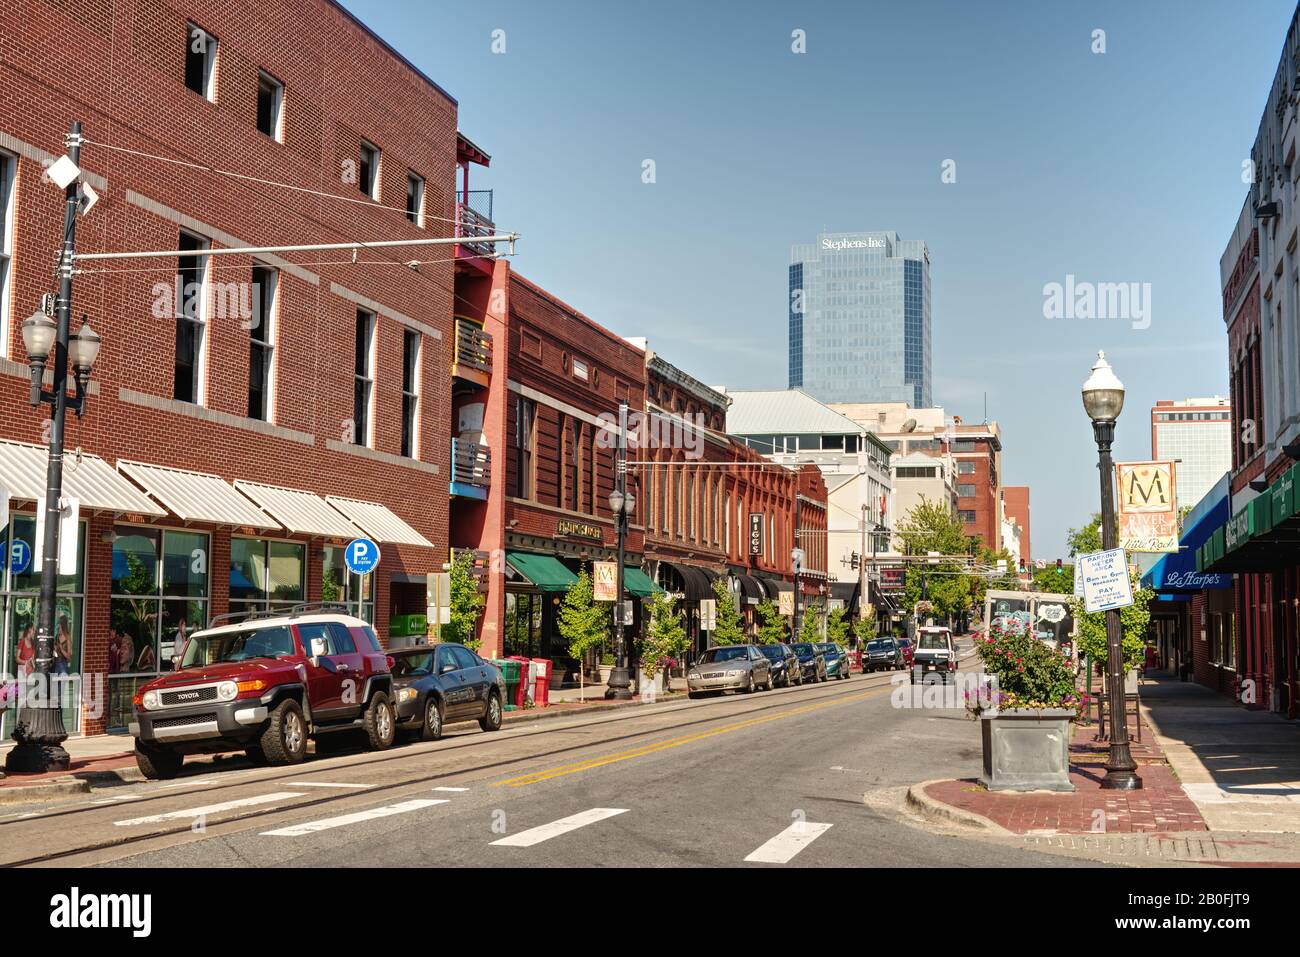 Downtown Little Rock, Arkansas, USA. Straßenlandschaft mit typischen Gebäuden aus redbrickischem Stil. Stockfoto